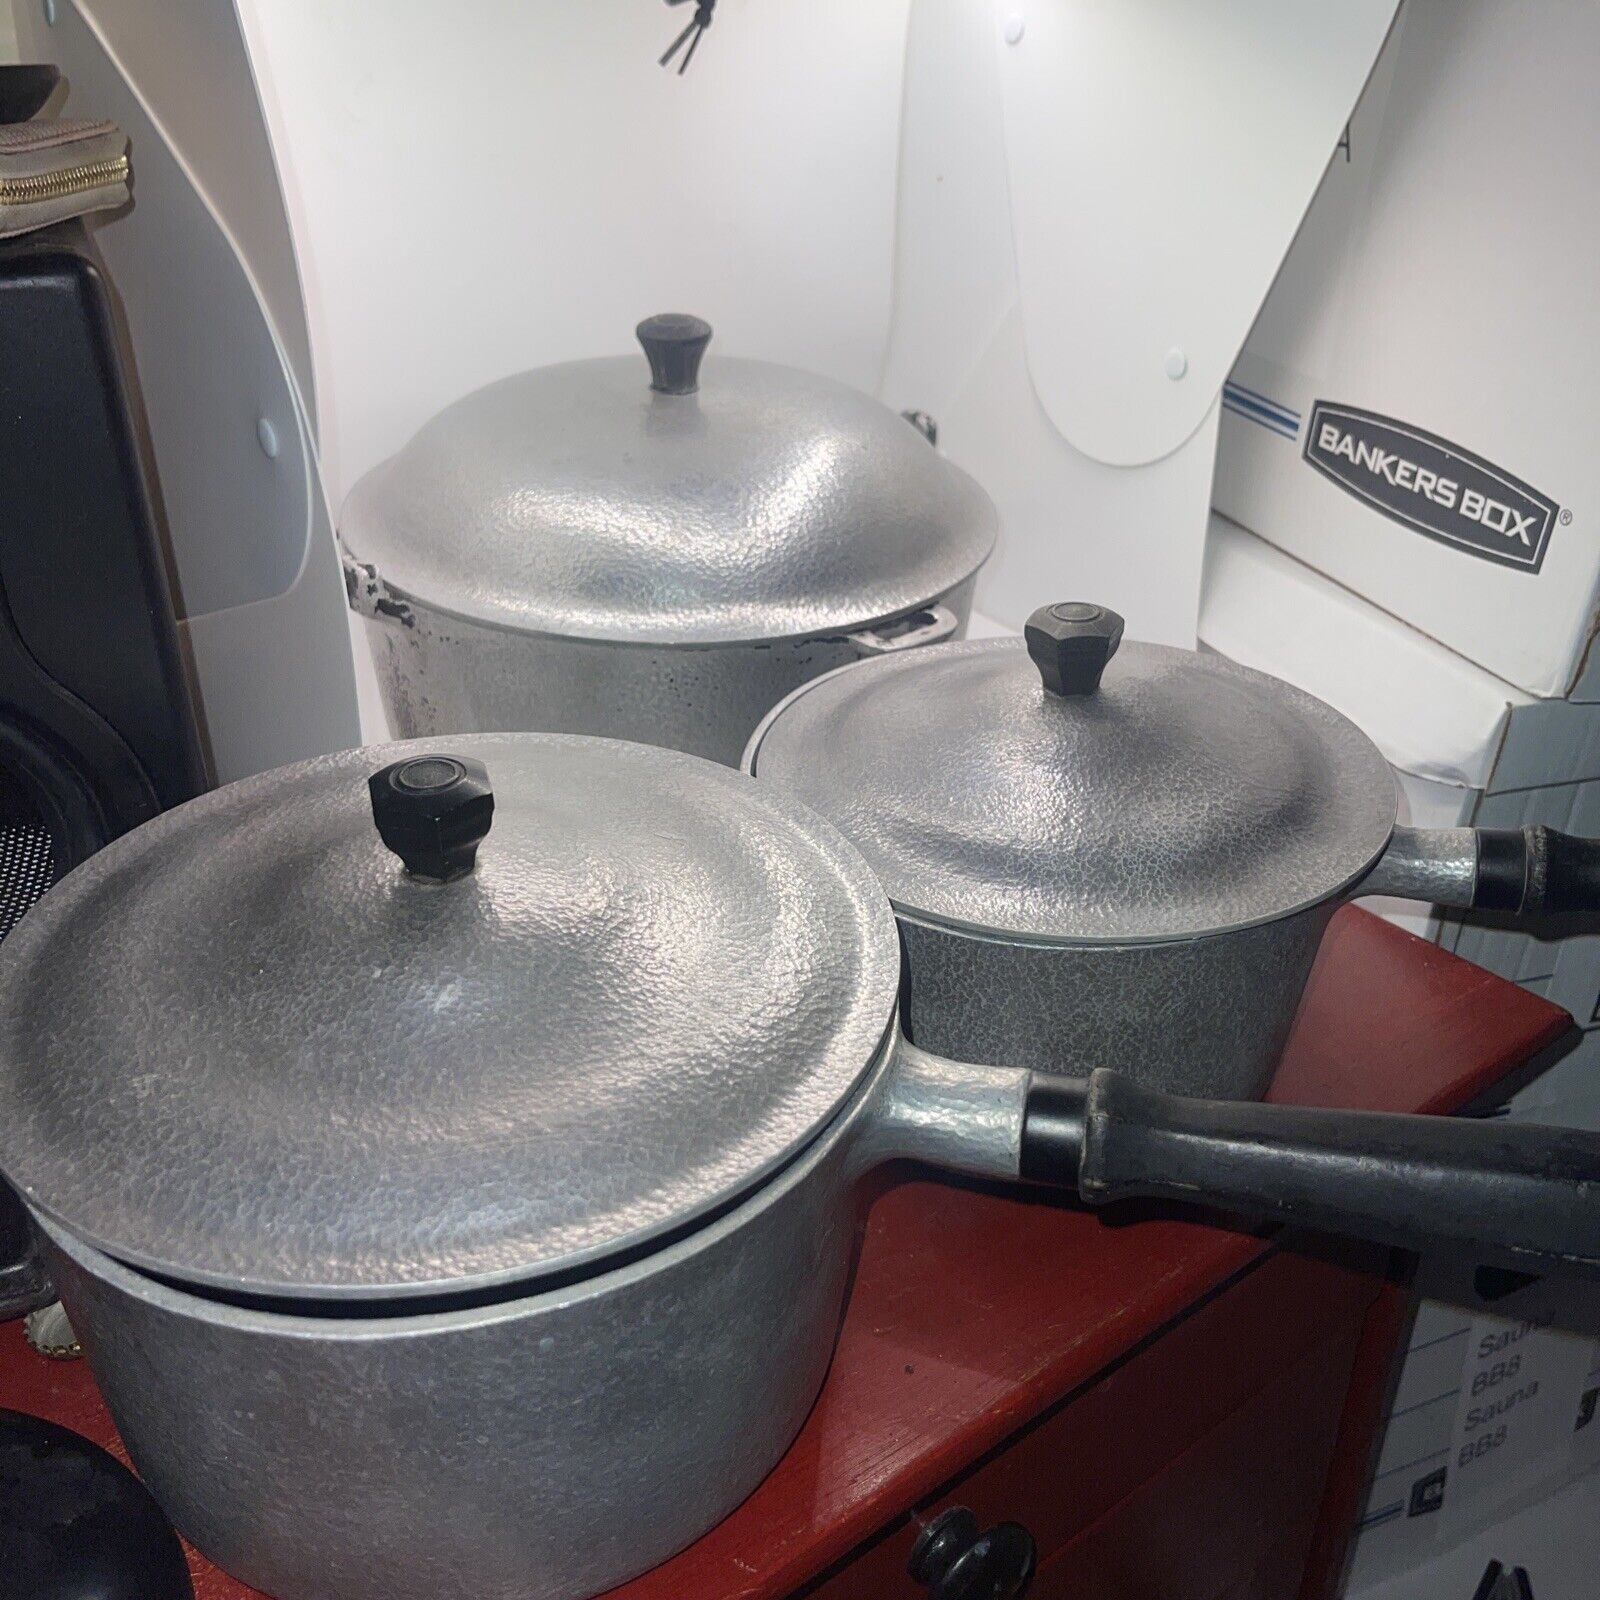 VTG LOT Club Aluminum Hammered 4.5 Qt. Dutch Oven Pot Lid & Handle + TWO PANS